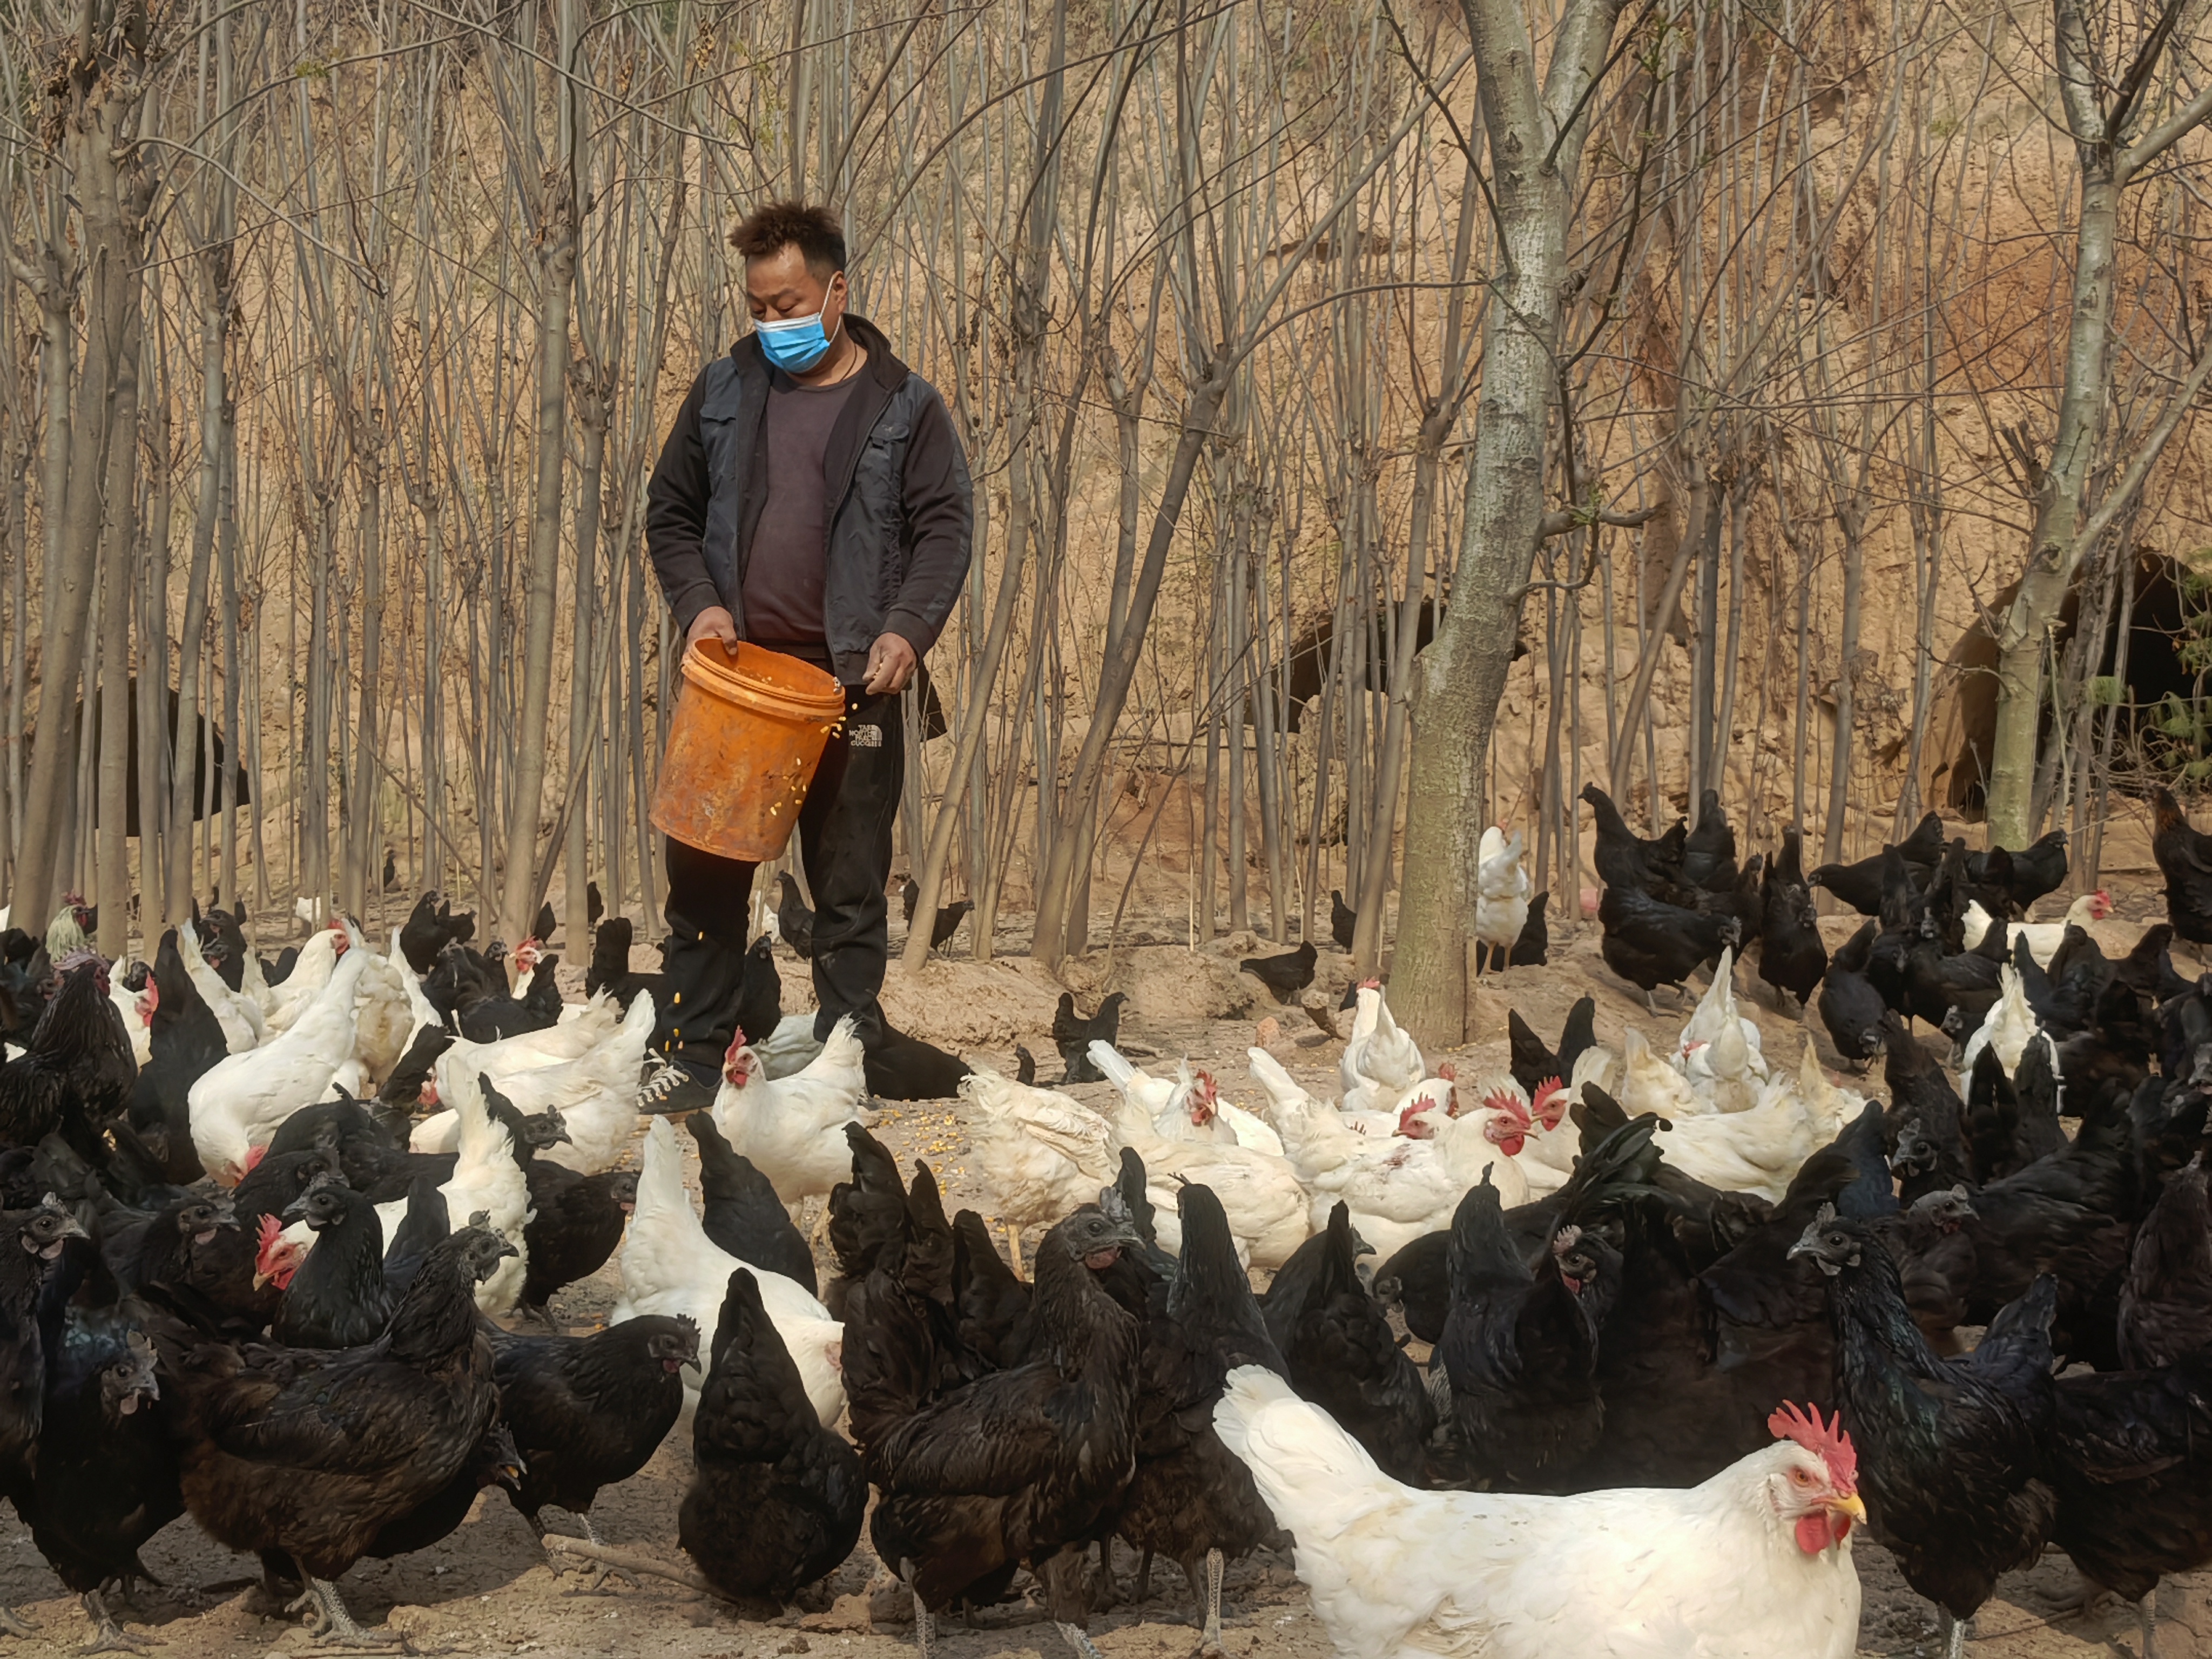 养鸡场主人王增强正在给鸡喂养玉米林下放养的鸡得病少,肉质好,鸡粪